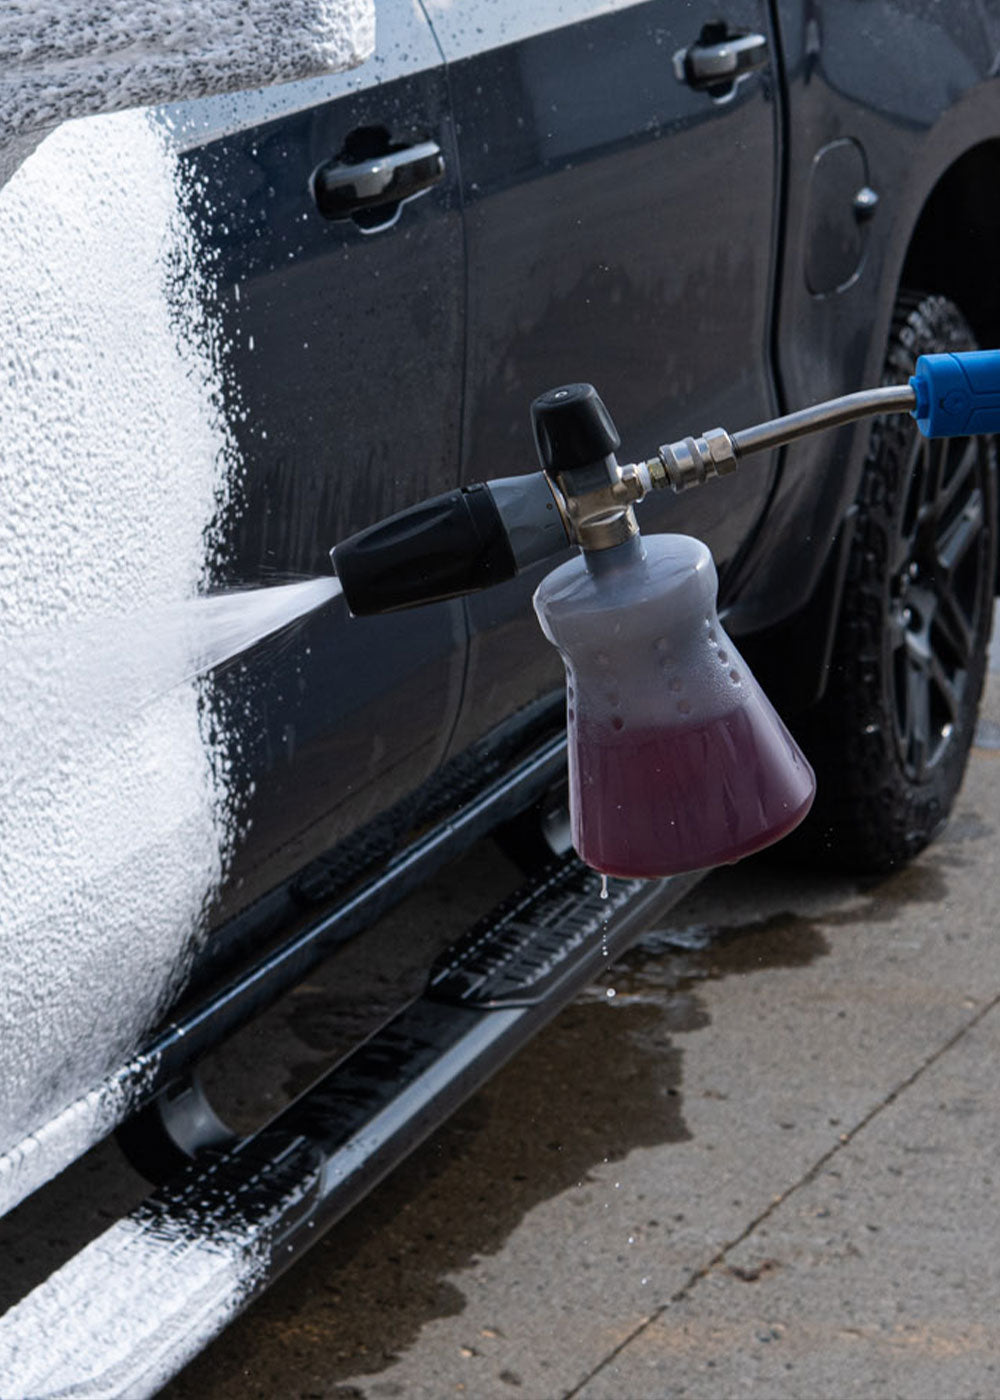 Carwash chemicals 101 - Professional Carwashing & Detailing